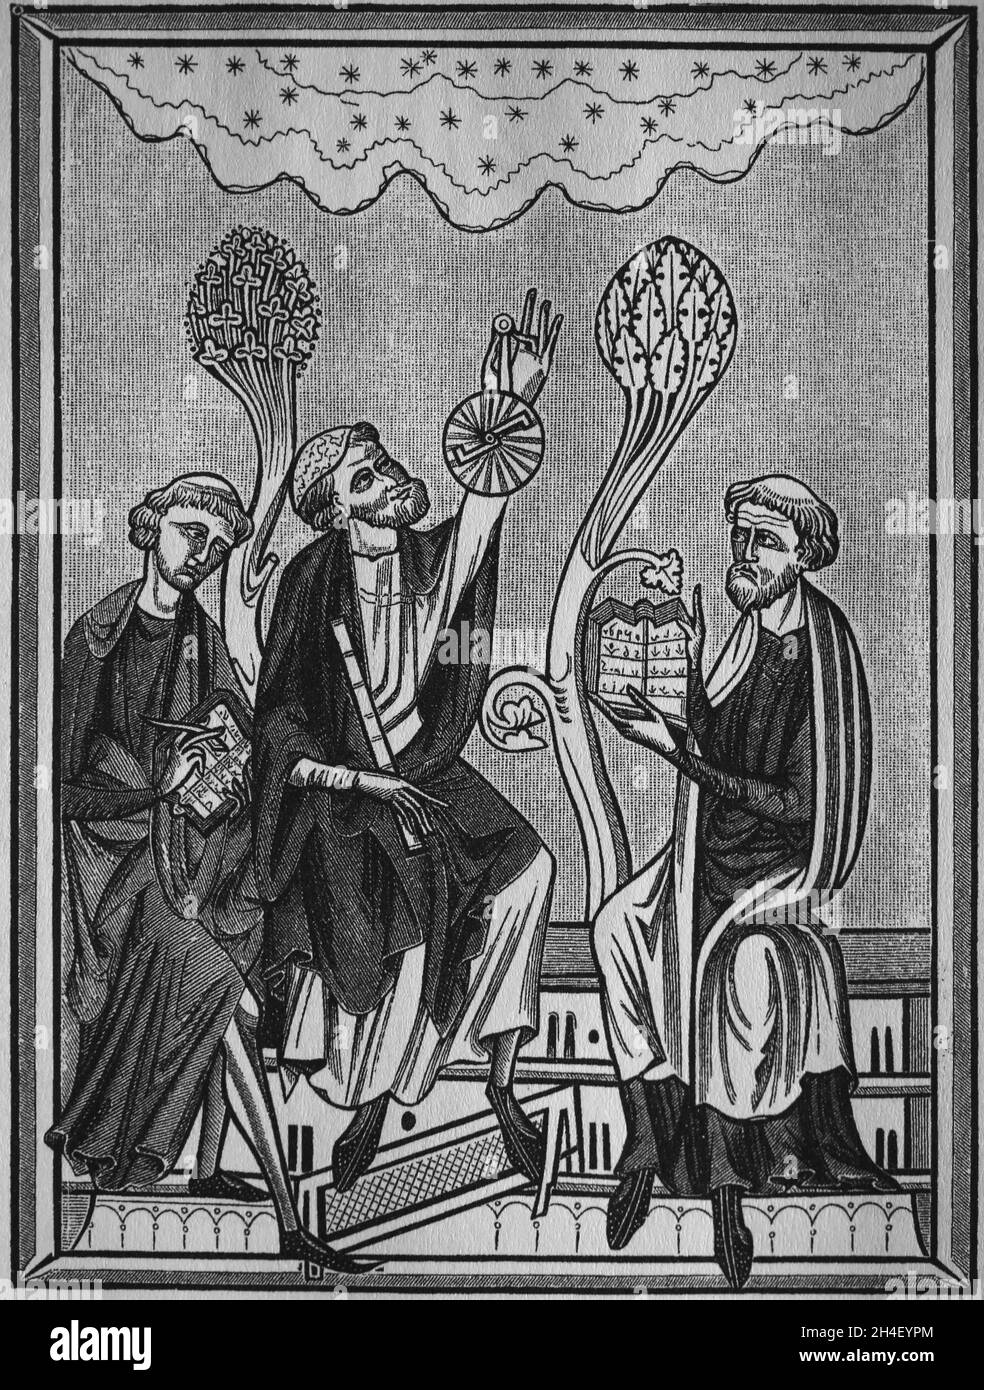 Leçon d'astronomie.La figure au centre utilise un astrolabe.Gravure, 19e siècle, à l'image d'une miniature du Braviary de Saint Luis, 13ème entrée. Banque D'Images